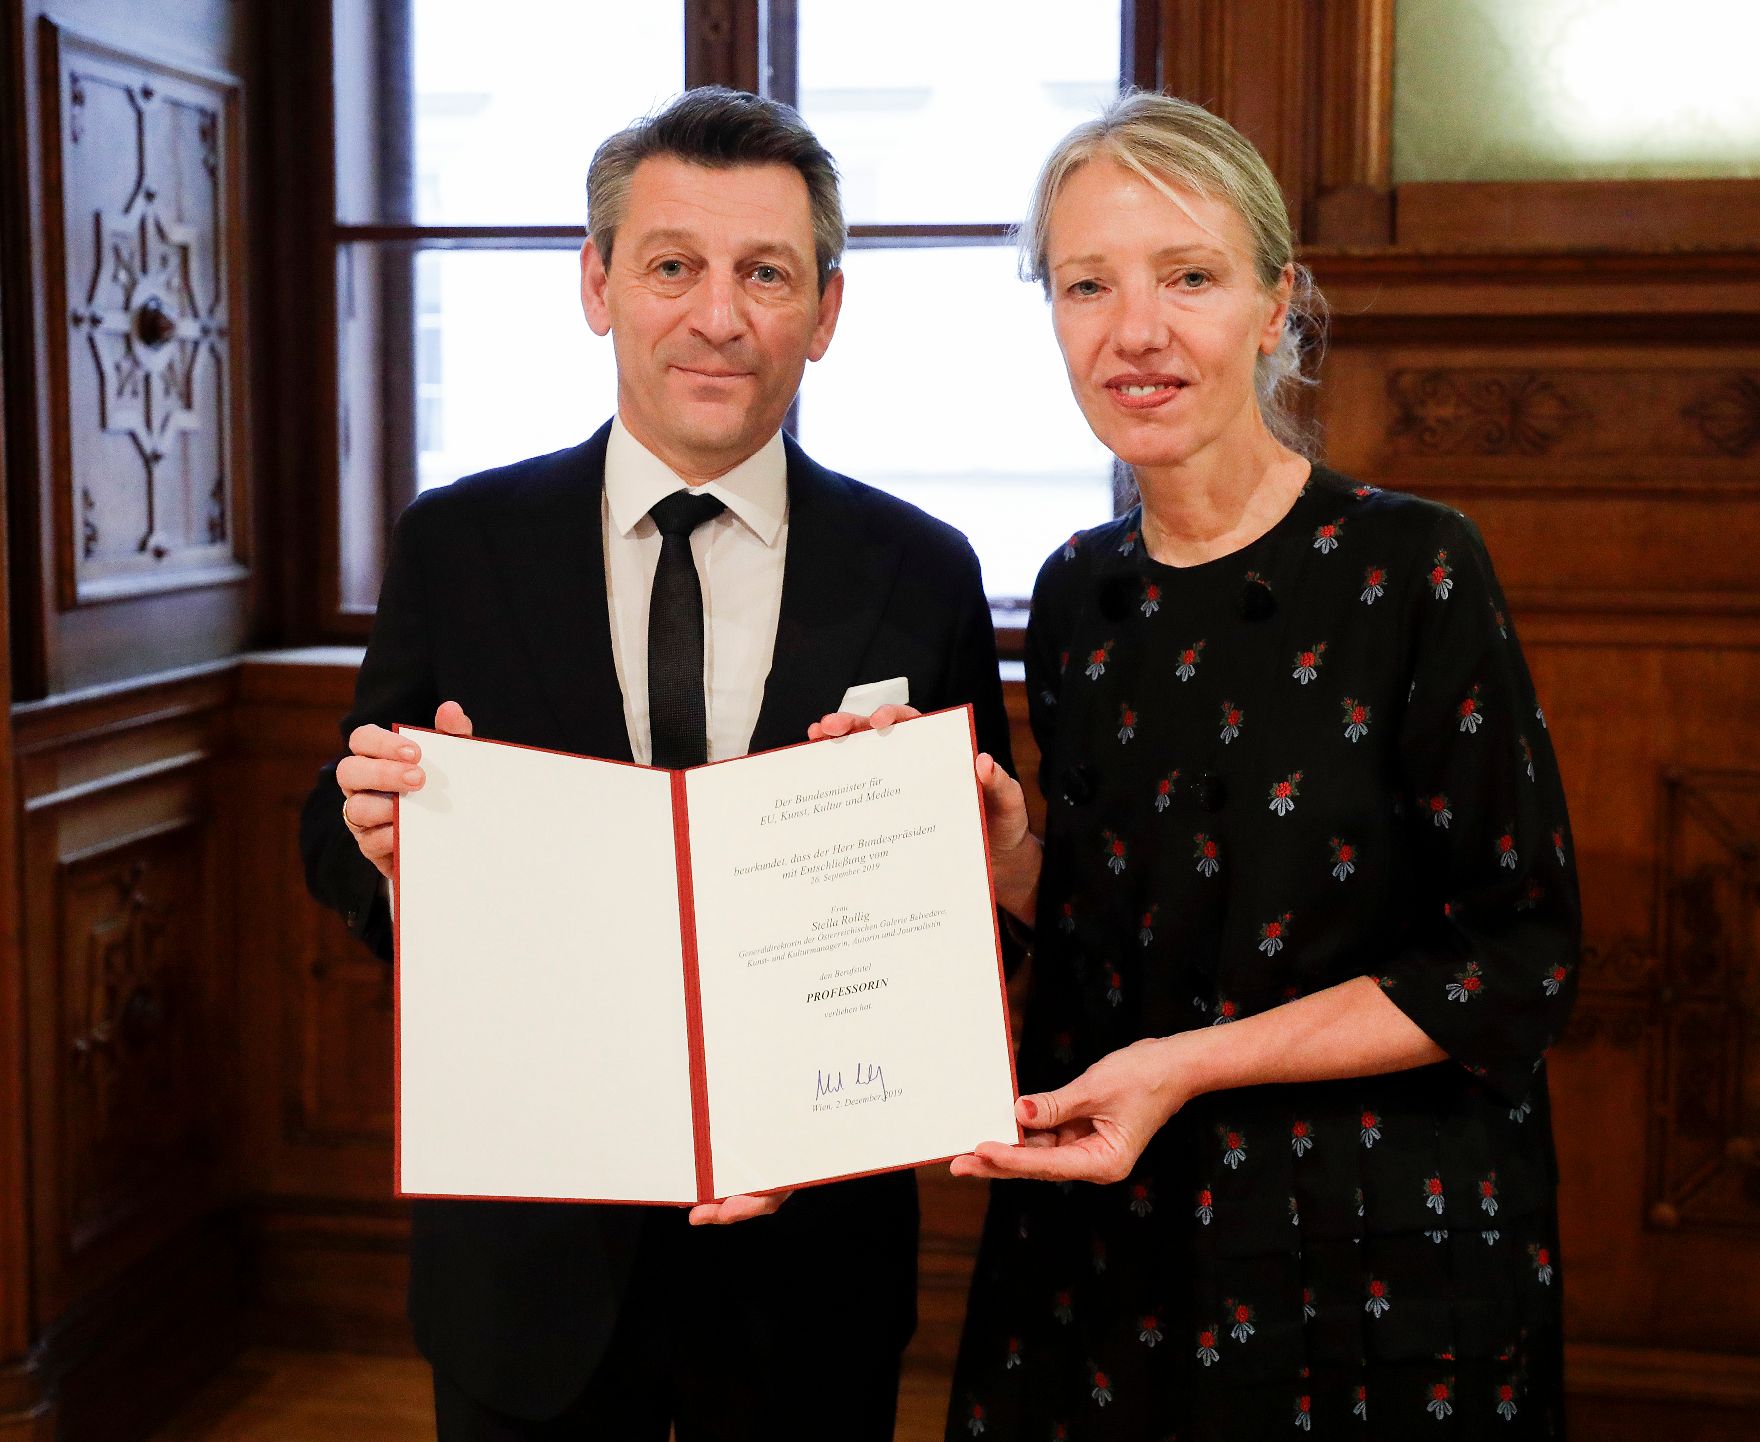 Am 2. Dezember 2019 überreichte Sektionschef Jürgen Meindl (l.) die Urkunde über die Verleihung des Berufstitels Professorin an Stella Rollig (r.).